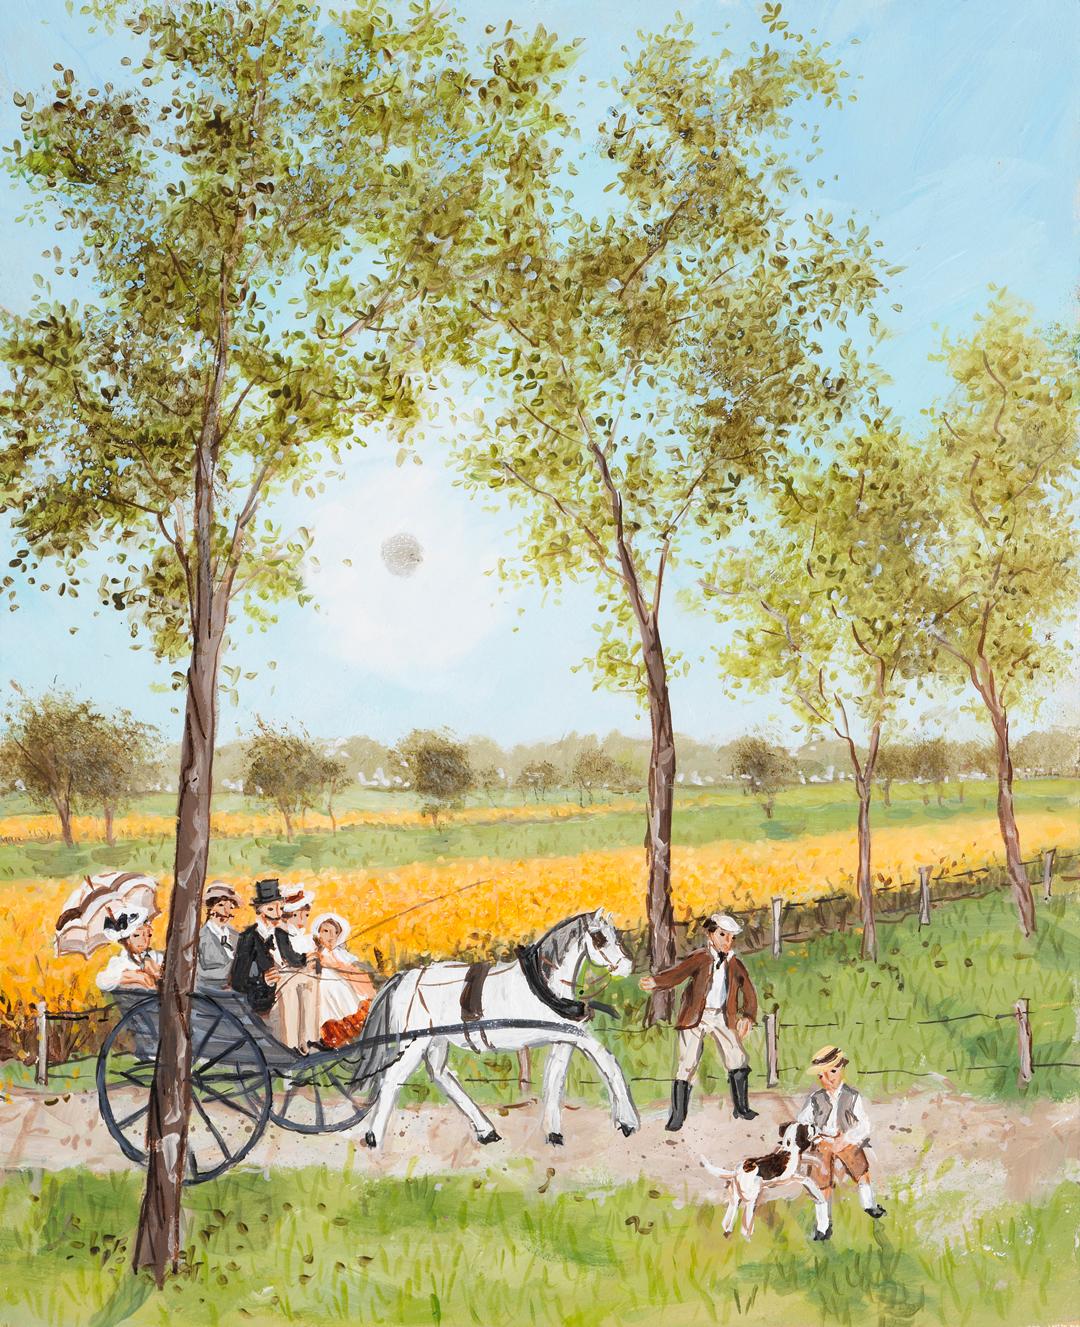 Chemin de campagne - Painting by Fabienne Delacroix